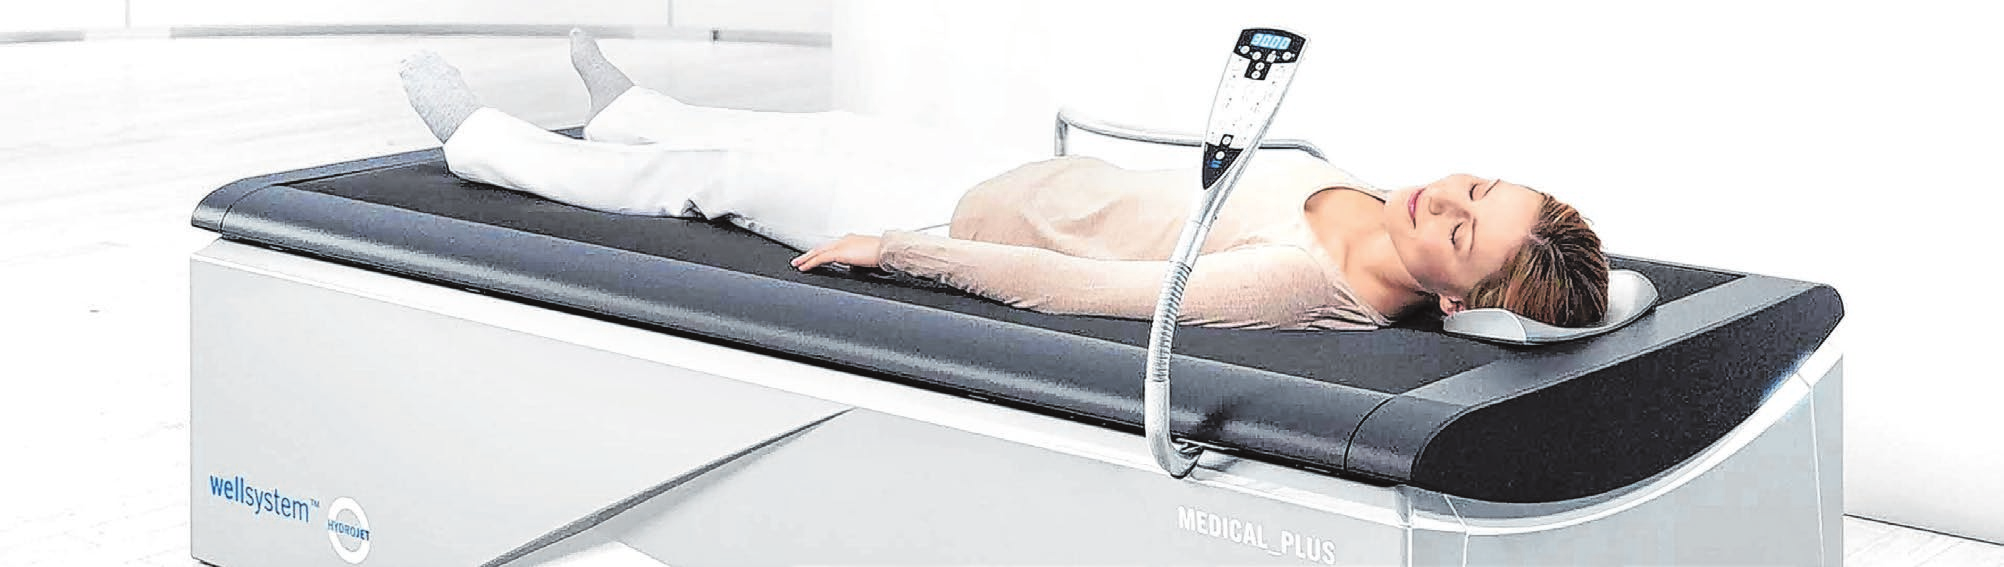 Eine gezielte Oberwasser-Medical-Massage rundet das Angebot ab.